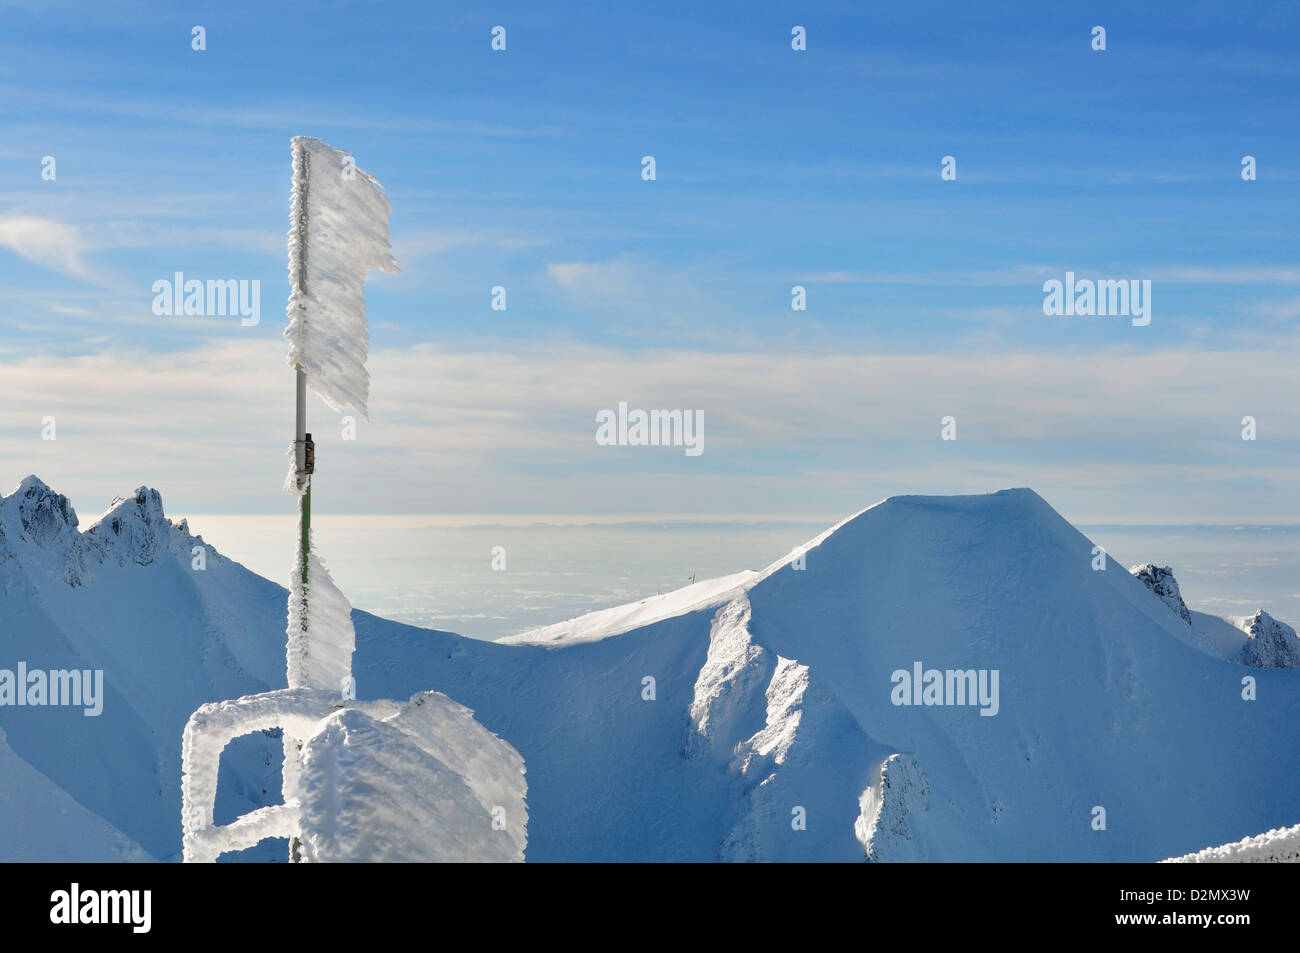 Congelati a freddo la neve su un palo sulla cima di una montagna in inverno Foto Stock